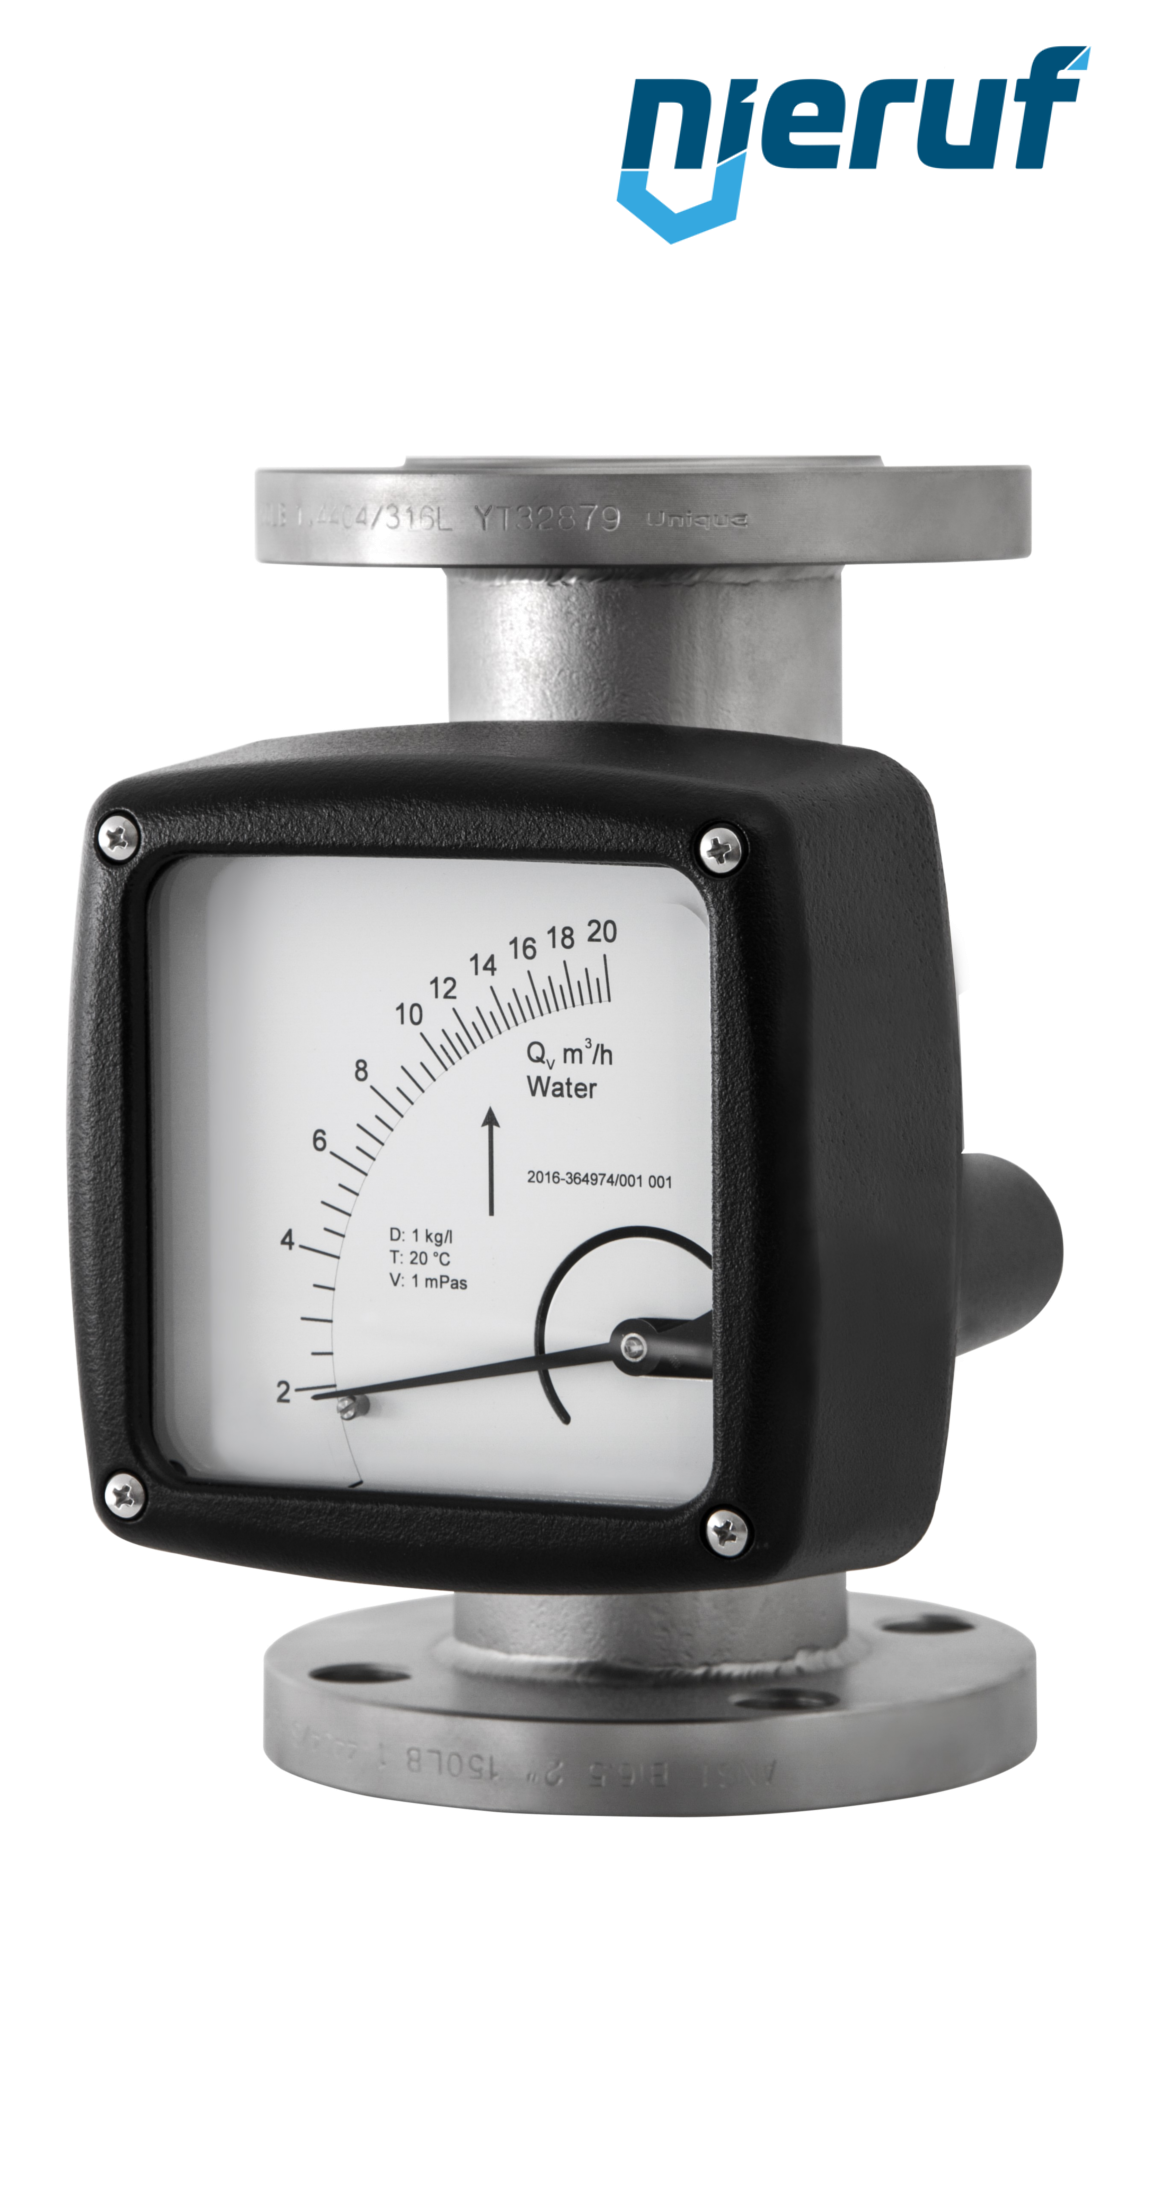 misuratore di flusso / rotametro completamente in metallo DN32-attacco 17,0 - 170,0 m3/h tubo DN40 aria